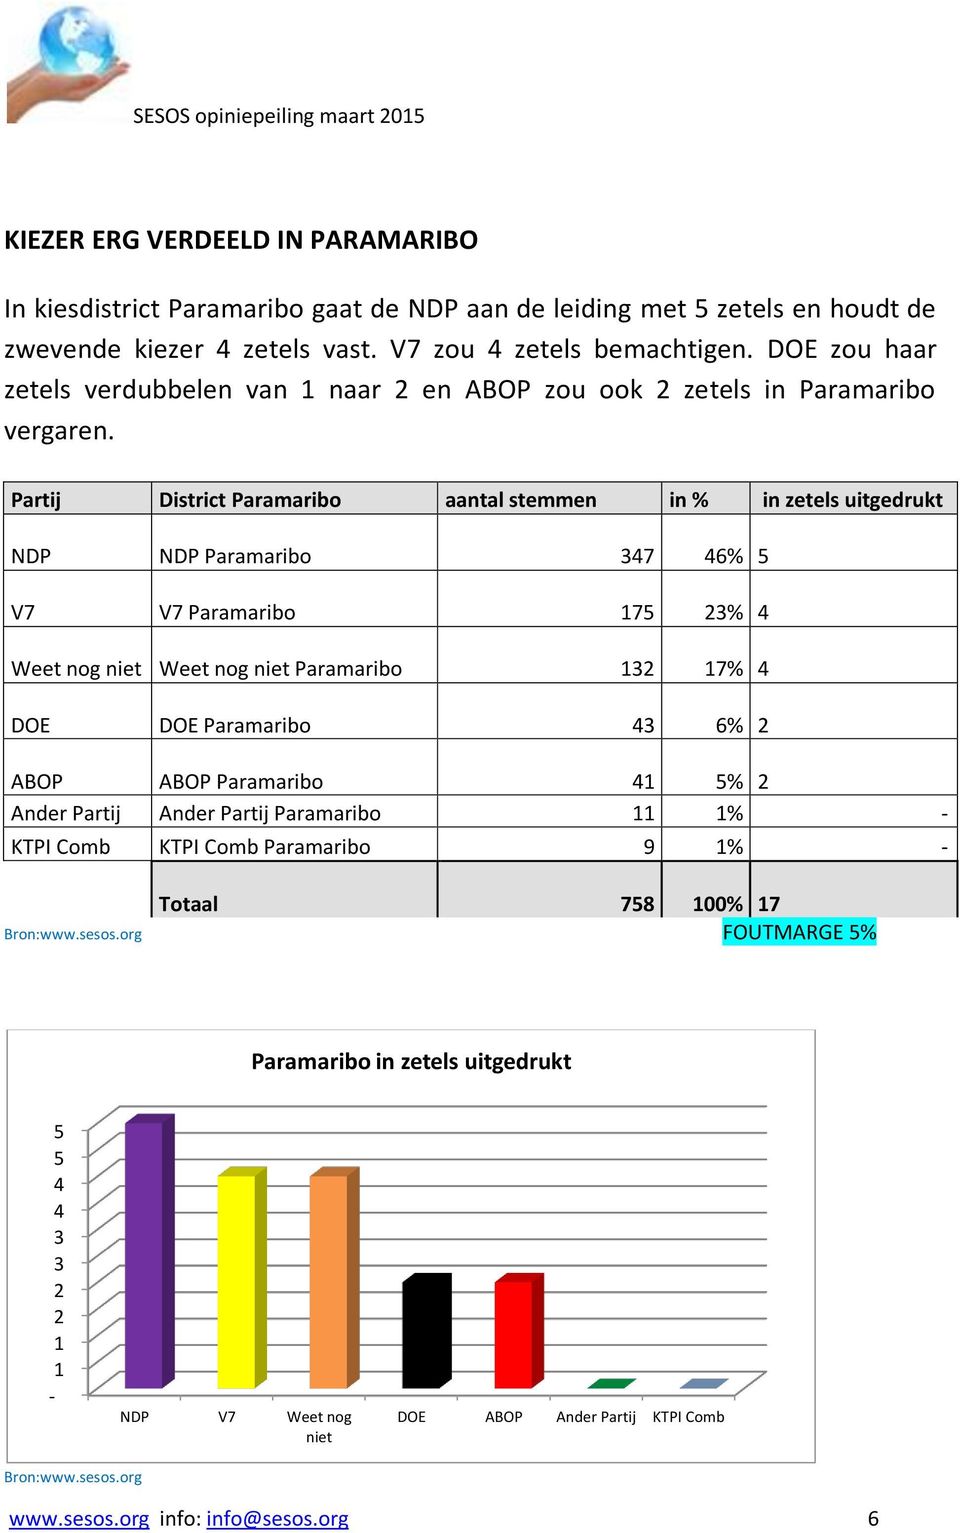 Partij District Paramaribo aantal stemmen in % in zetels uitgedrukt NDP NDP Paramaribo 347 46% 5 V7 V7 Paramaribo 75 3% 4 Weet nog niet Weet nog niet Paramaribo 3 7% 4 DOE DOE